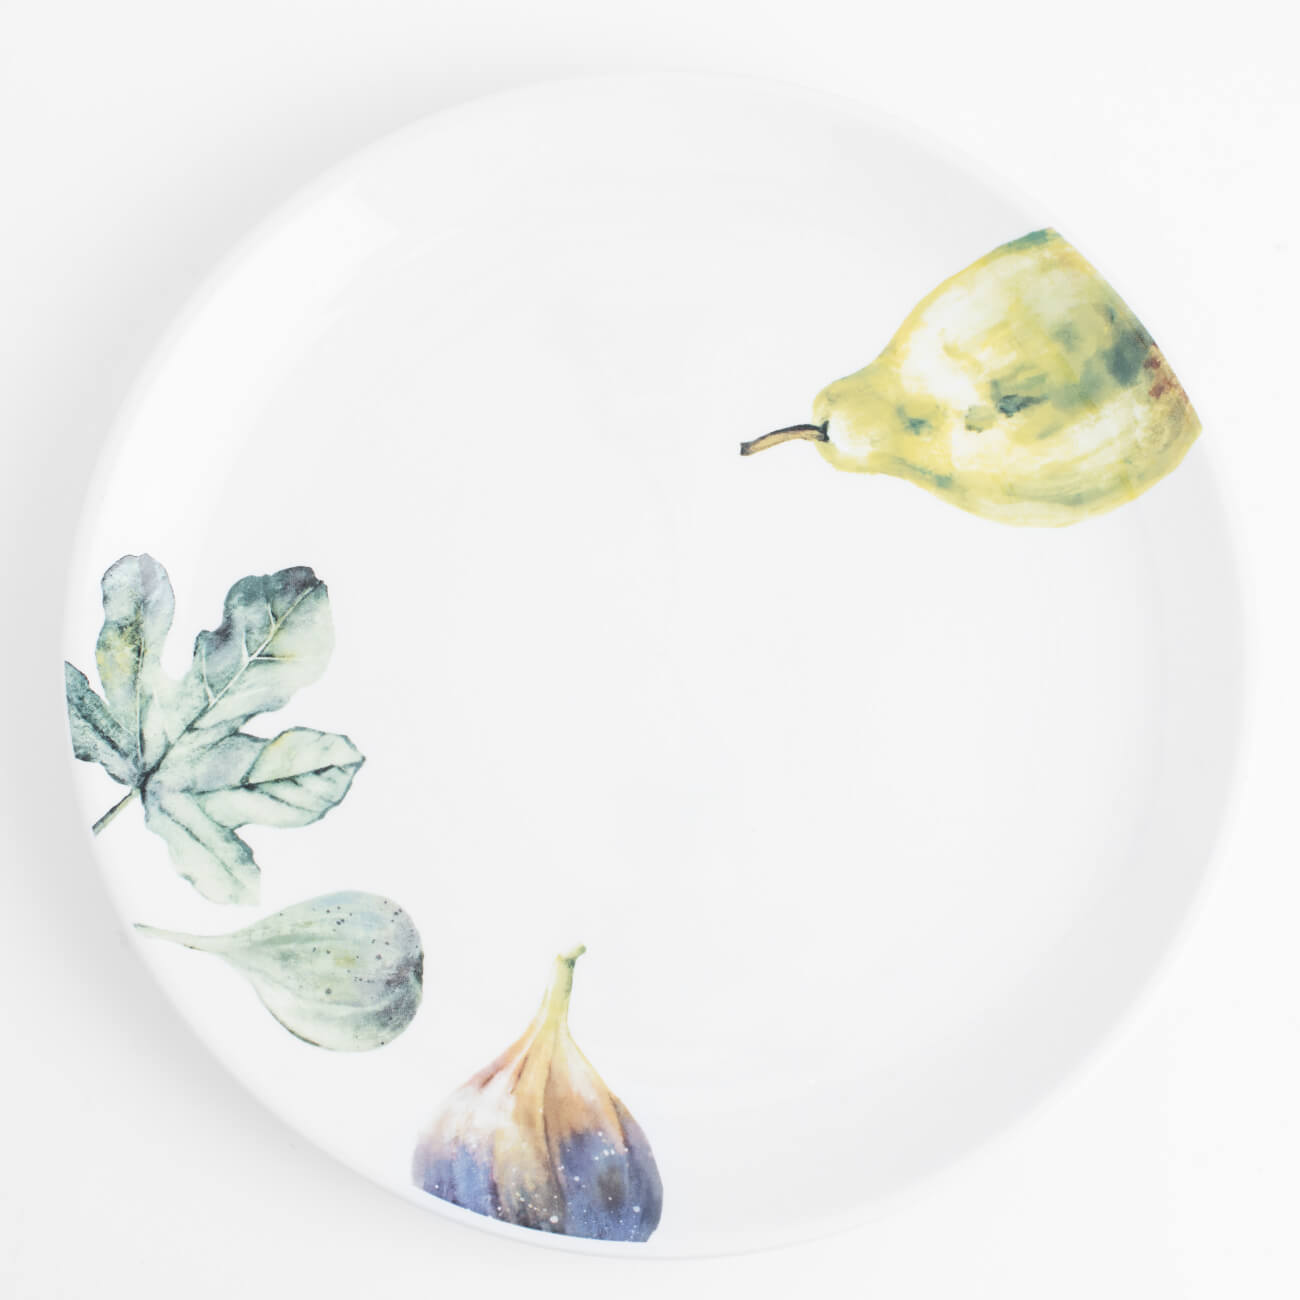 Тарелка обеденная, 26 см, керамика, белая, Инжир и груша, Fruit garden тарелка обеденная tudor royal circle 26 см